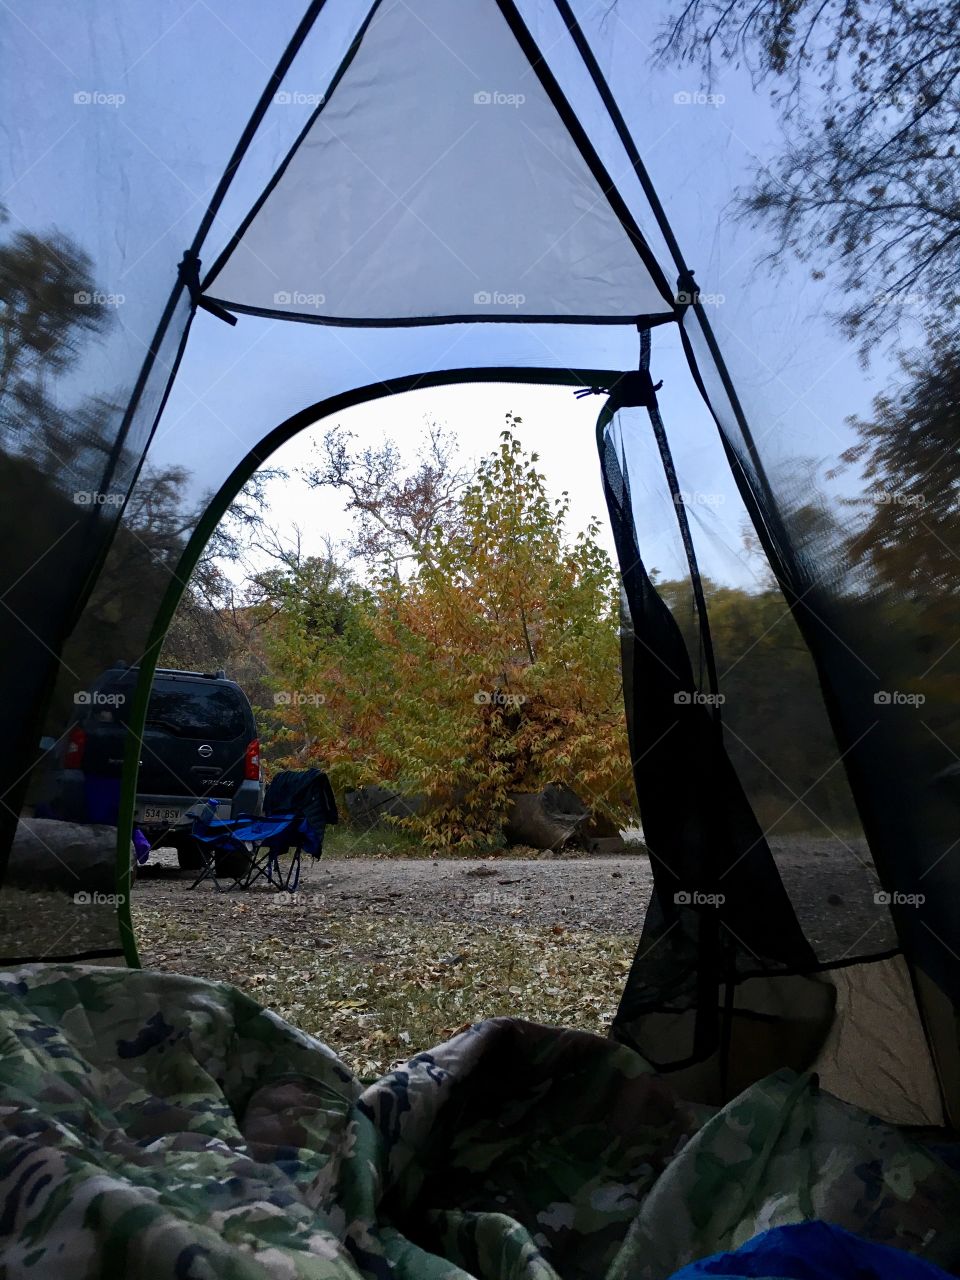 Fall morning at camp 